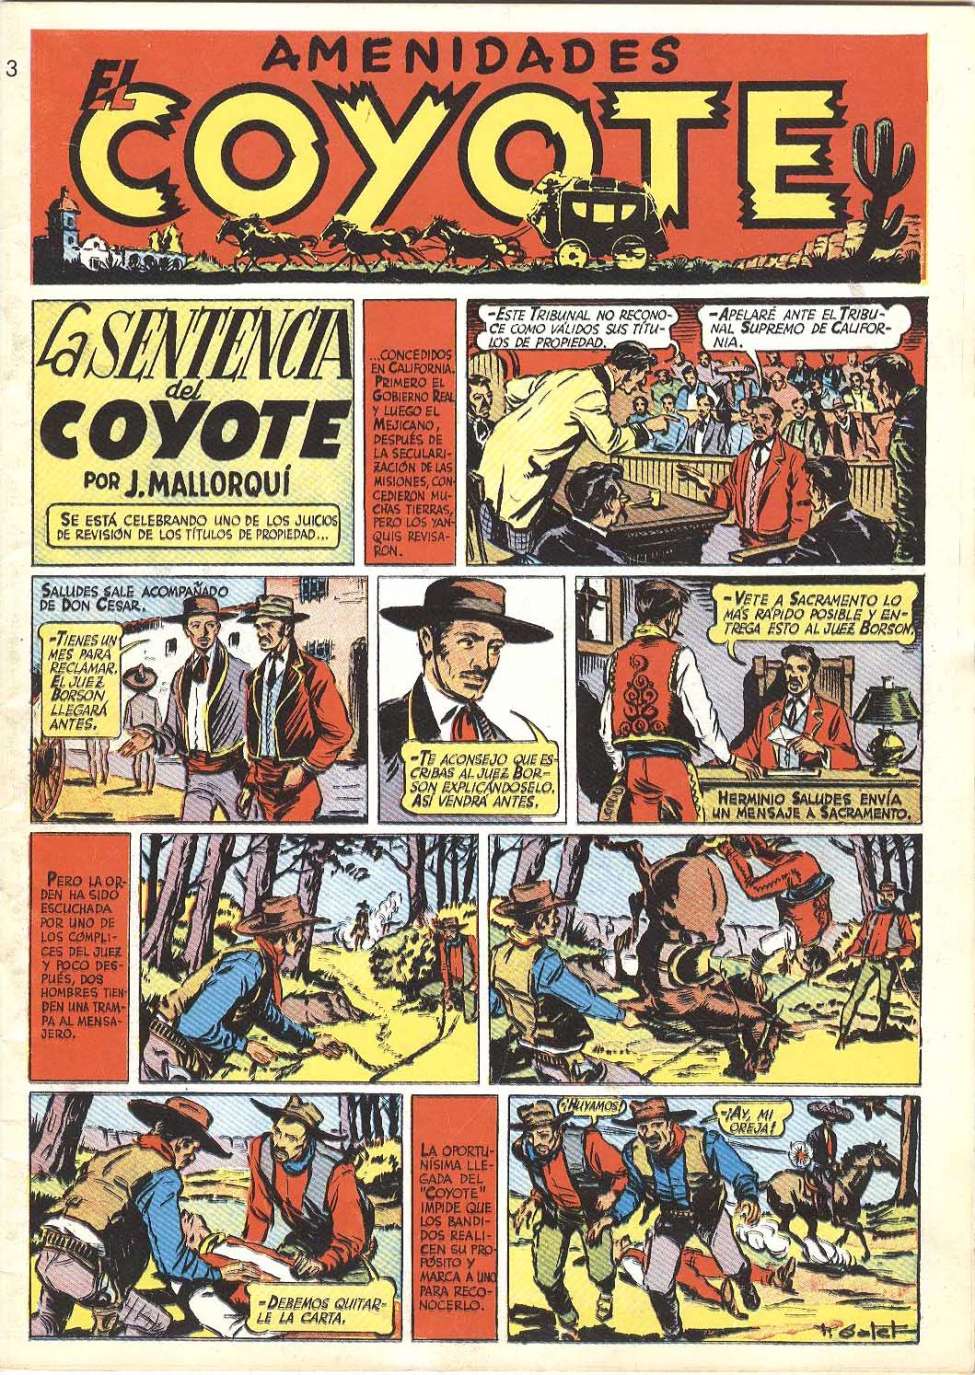 Book Cover For El Coyote 3 - La Sentencia del Coyote